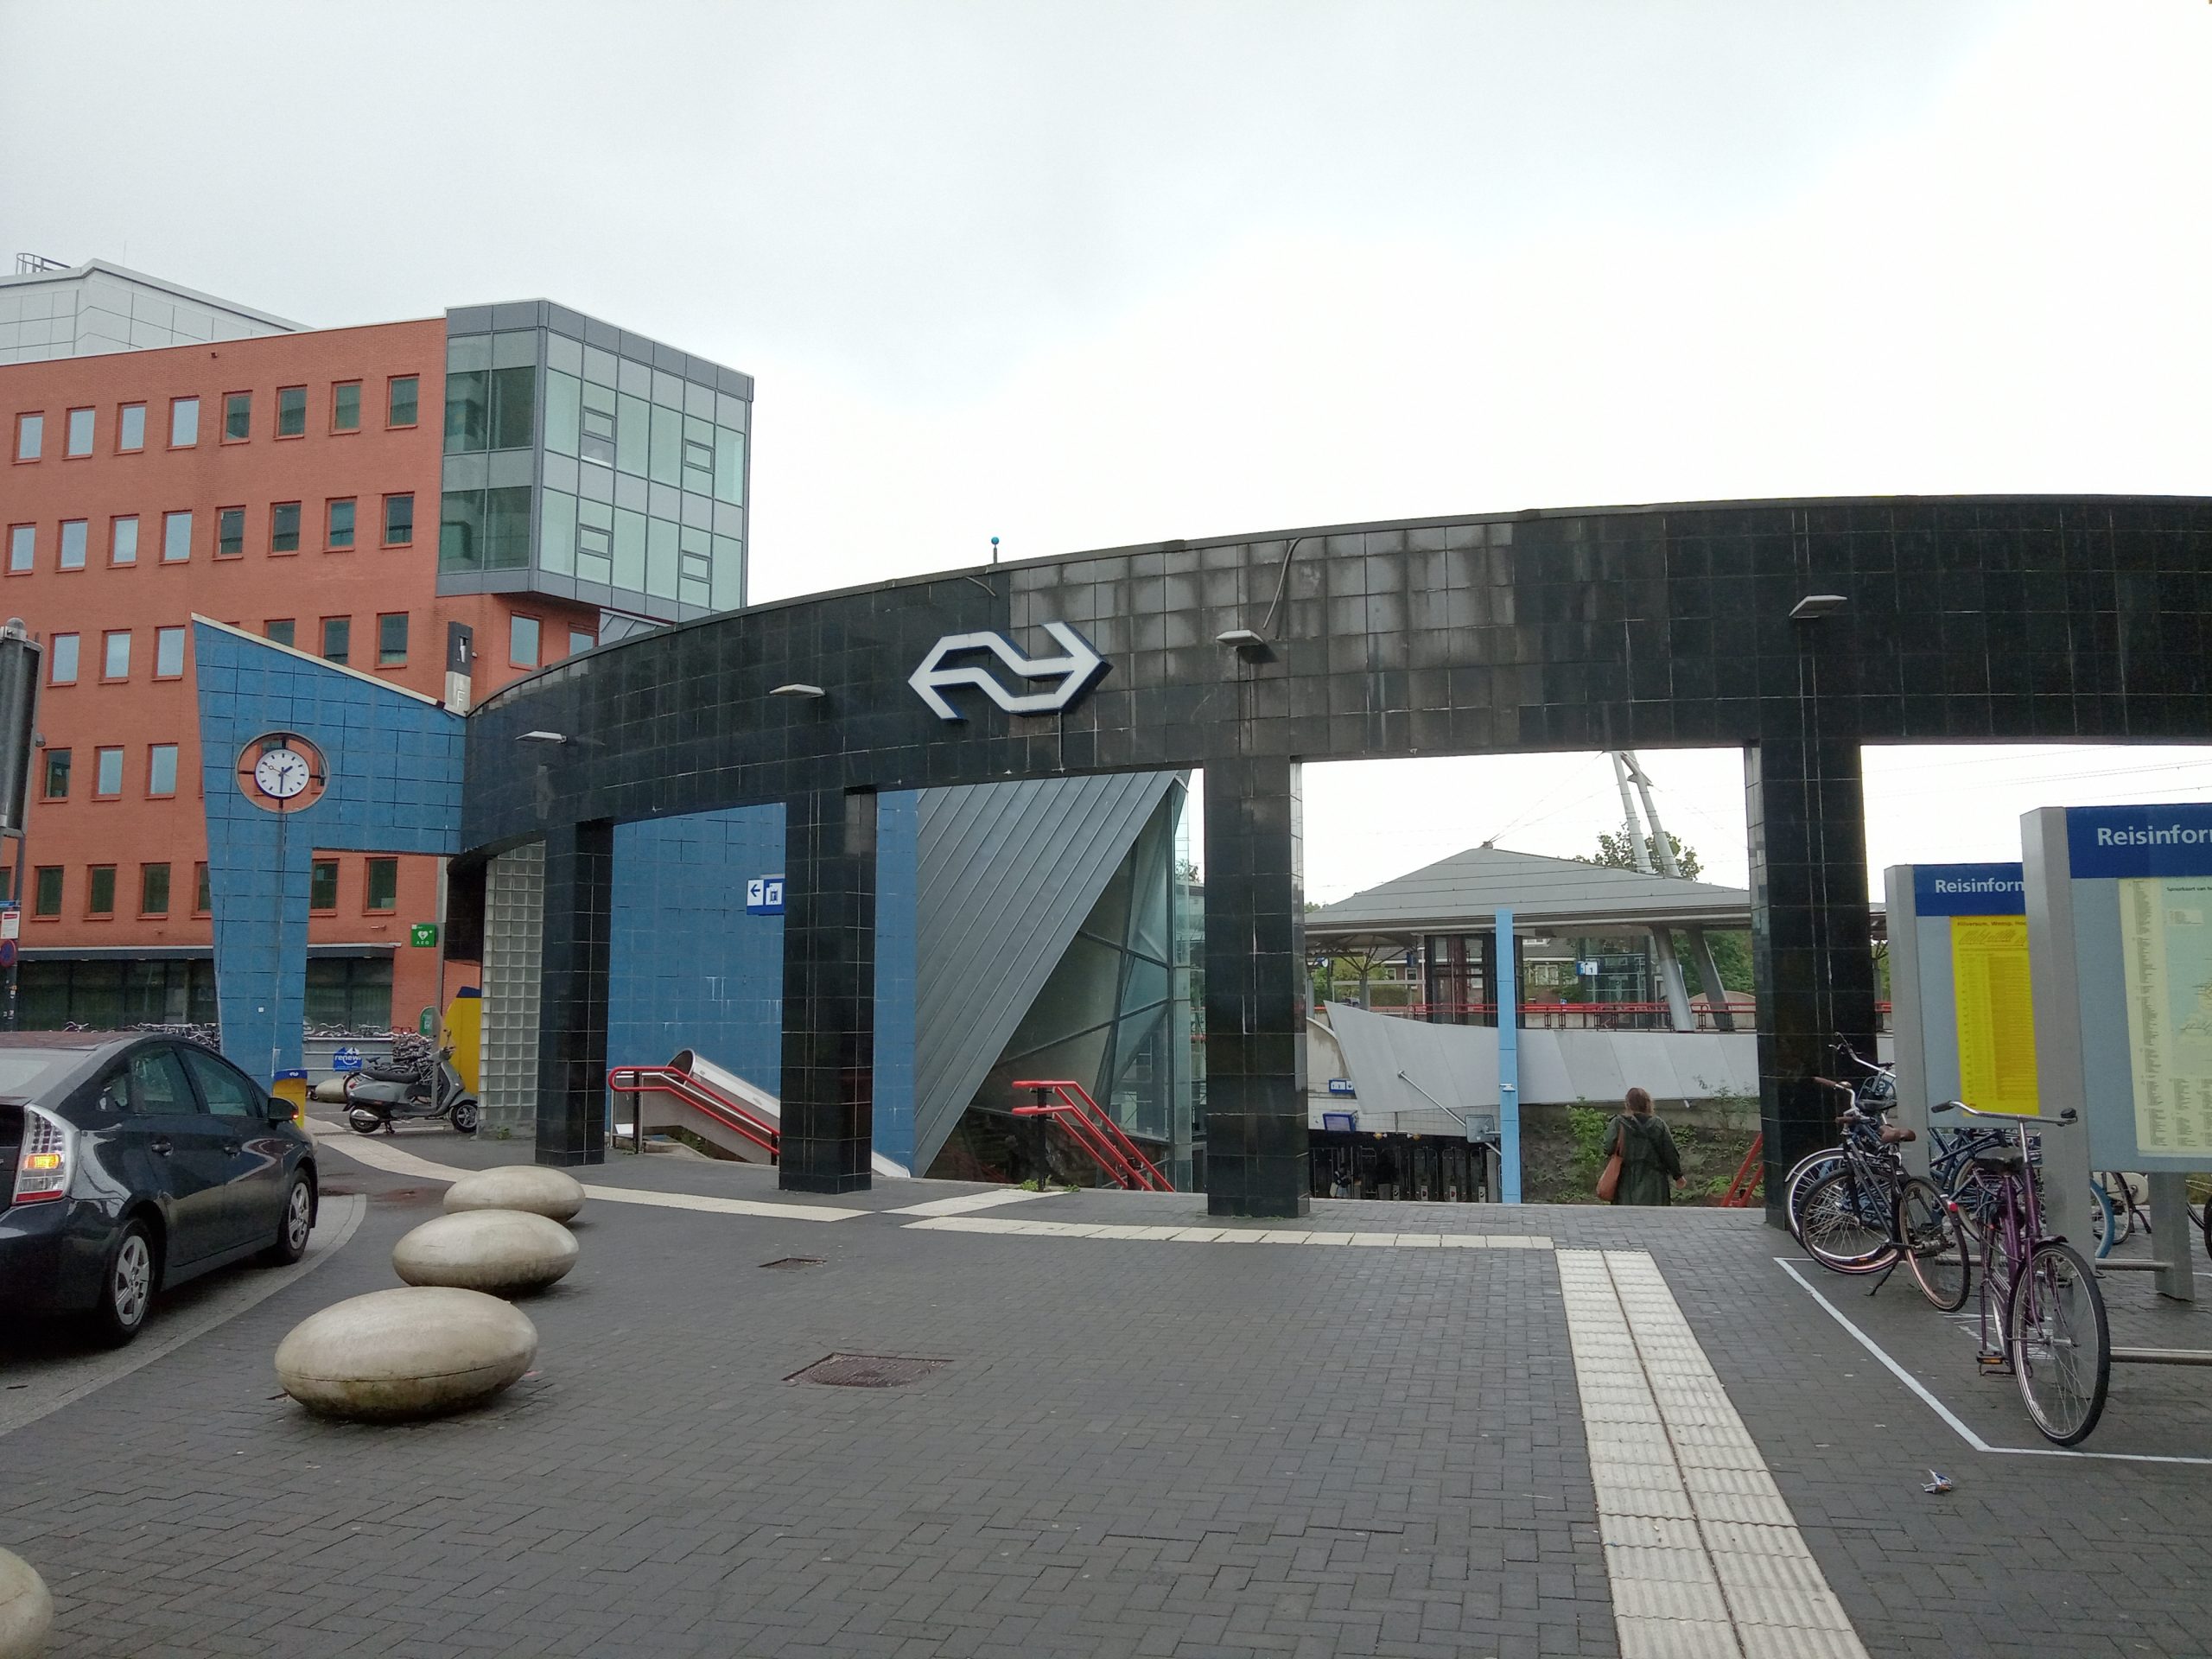 Station Overvecht aangewezen als Utrechts monument